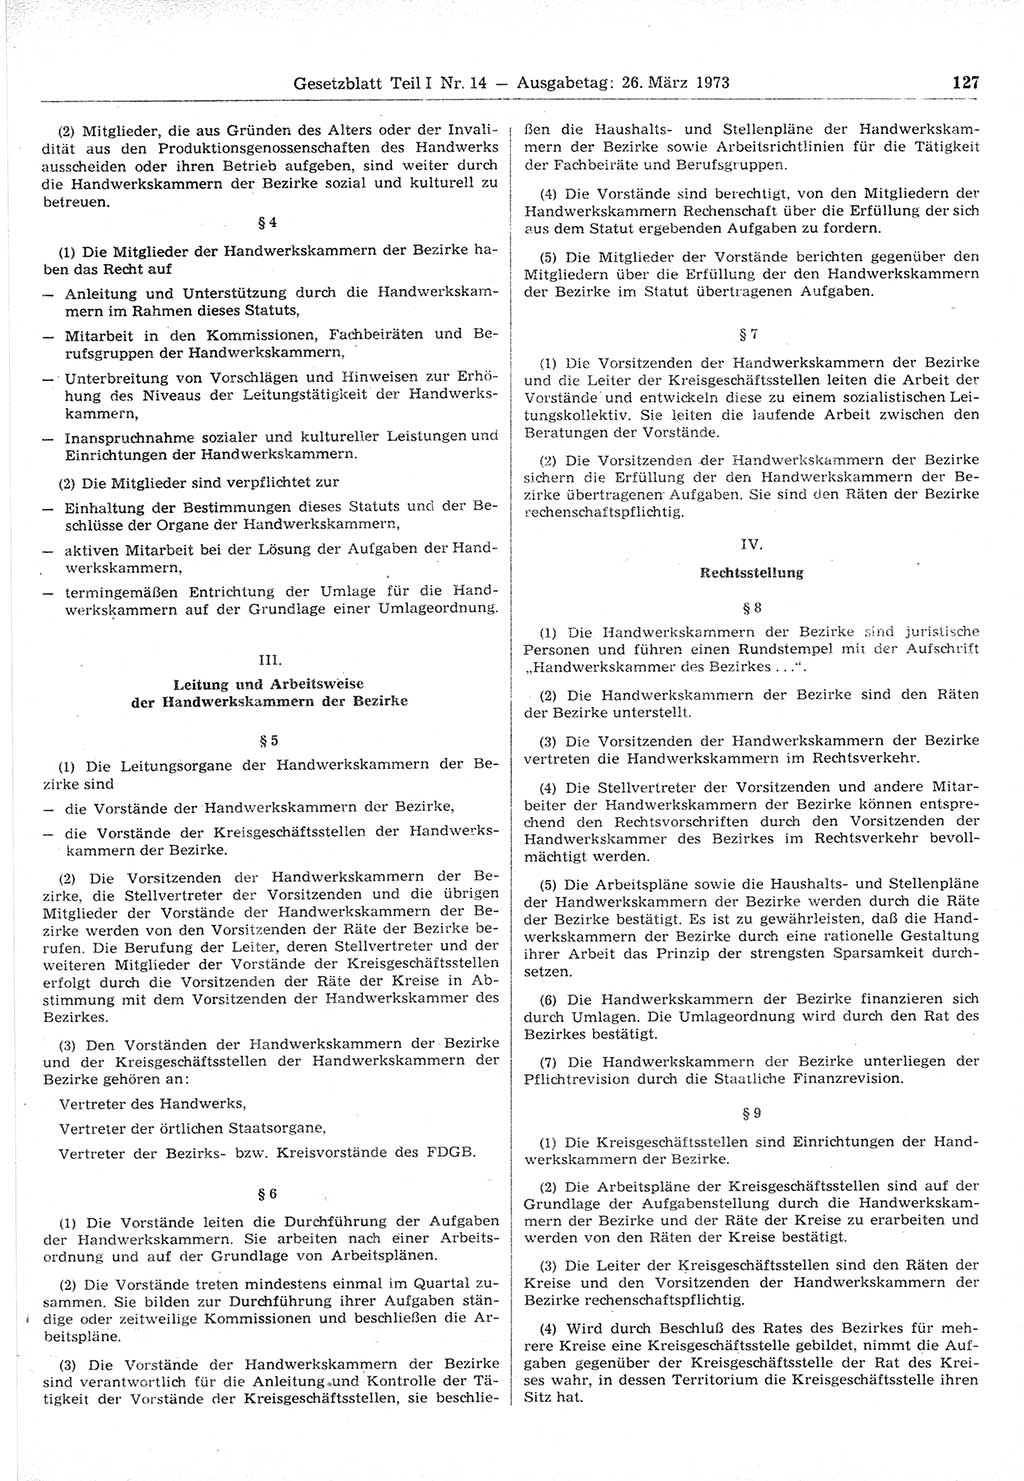 Gesetzblatt (GBl.) der Deutschen Demokratischen Republik (DDR) Teil Ⅰ 1973, Seite 127 (GBl. DDR Ⅰ 1973, S. 127)